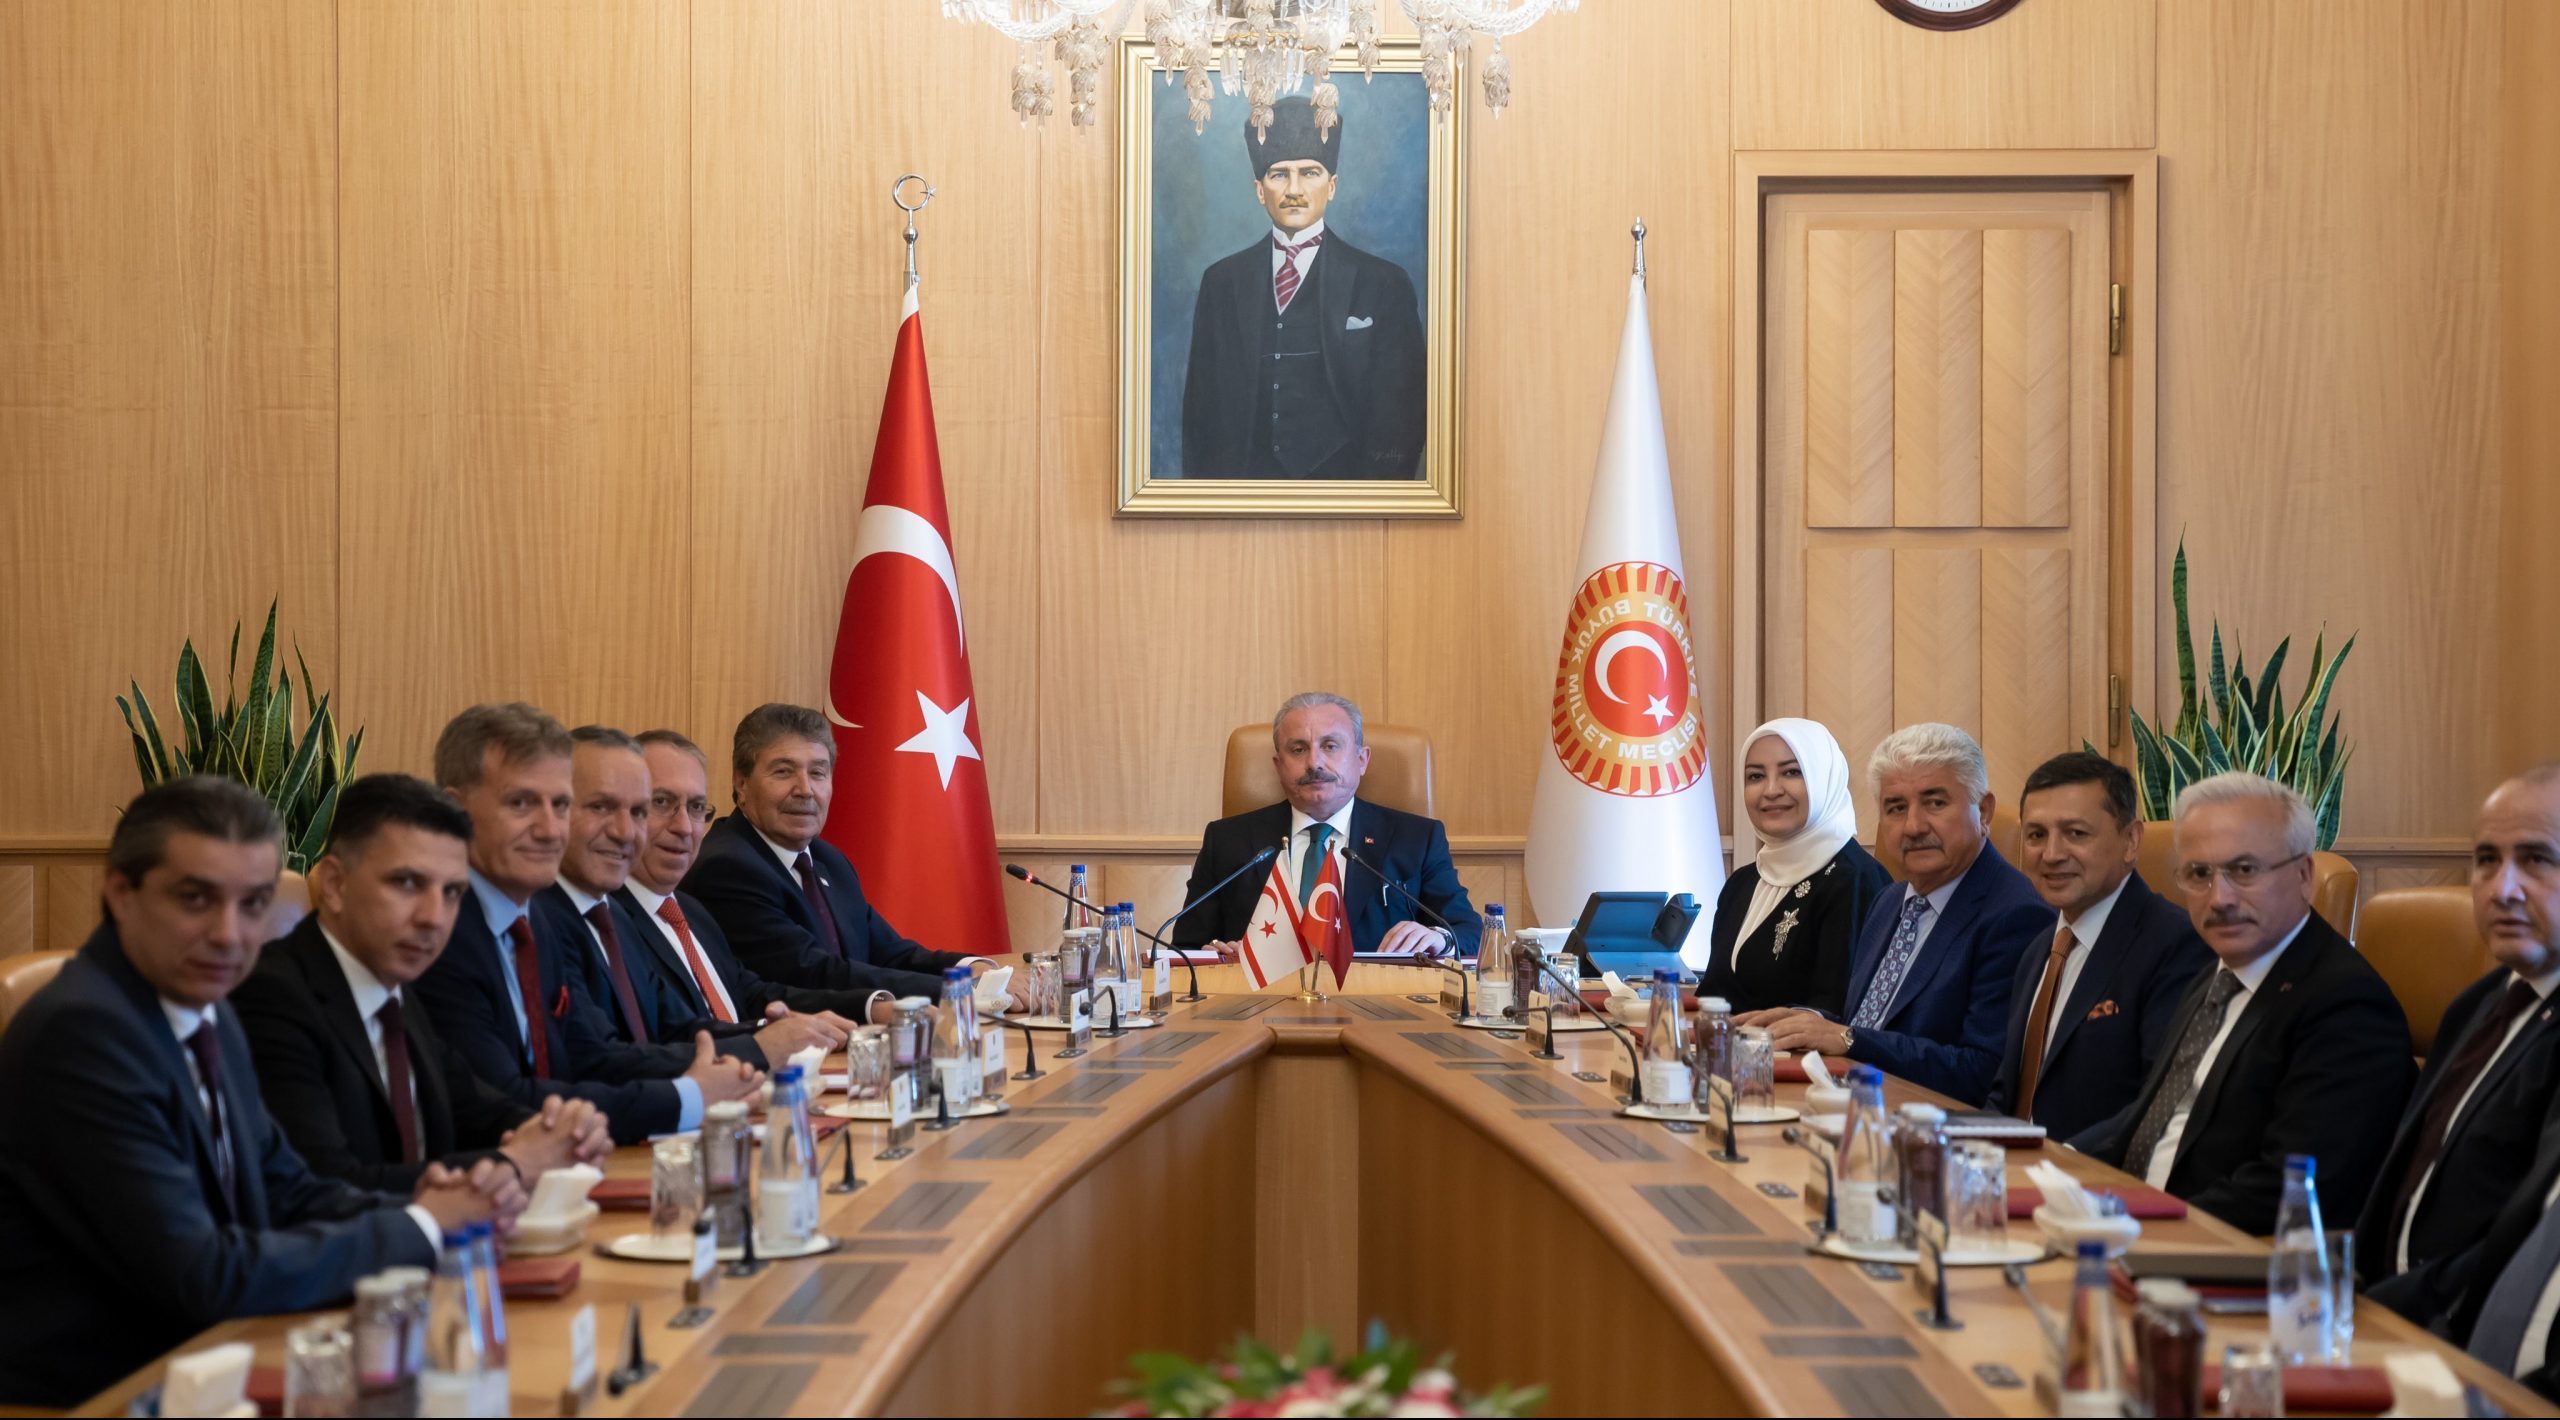 TBMM Başkanı Mustafa Şentop, ilk resmi ziyaretini Ankara’ya gerçekleştiren KKTC Başbakanı Ünal Üstel ve heyetiyle Görüştü.